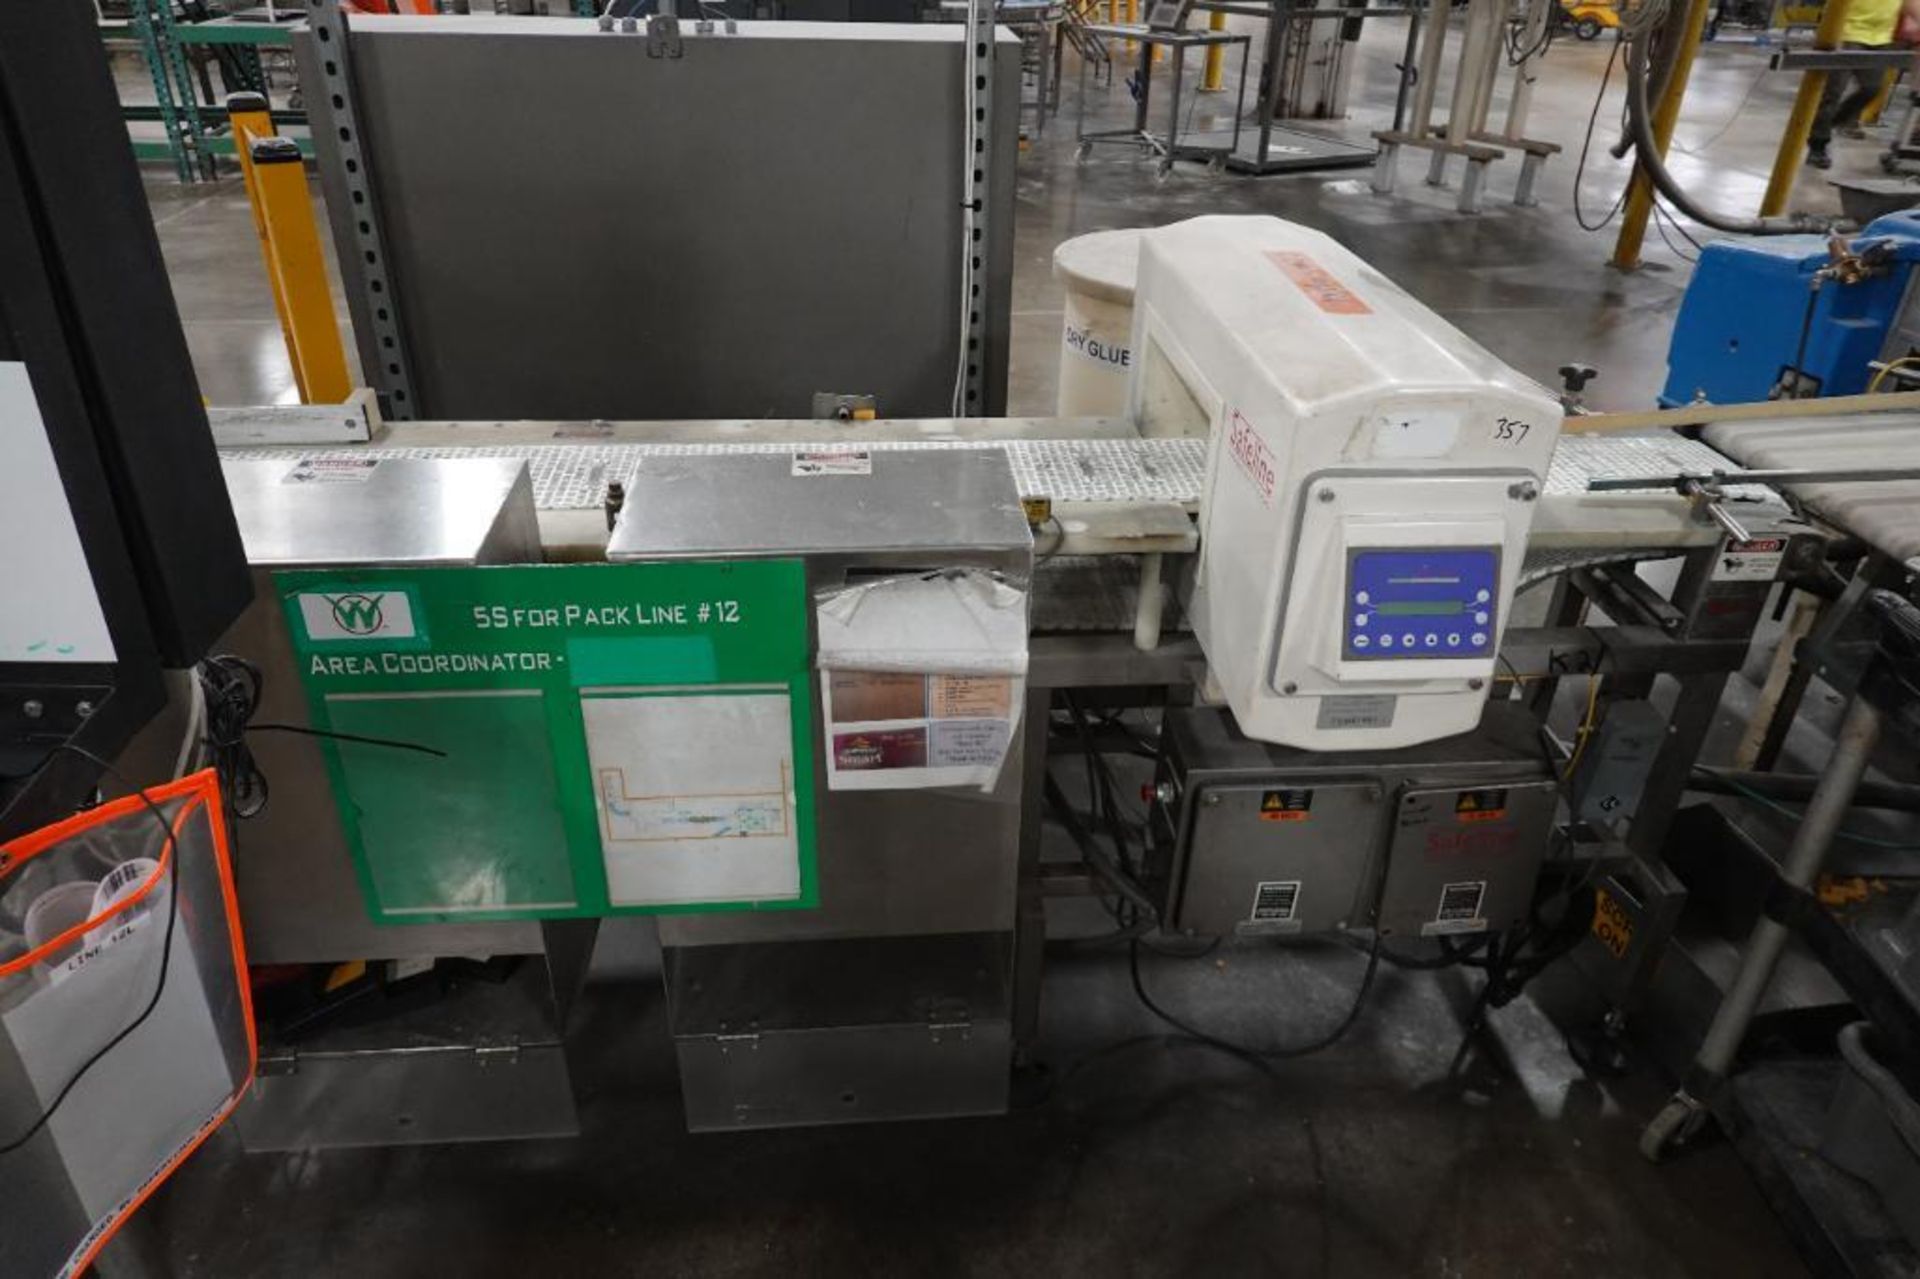 Safeline metal detector with conveyor